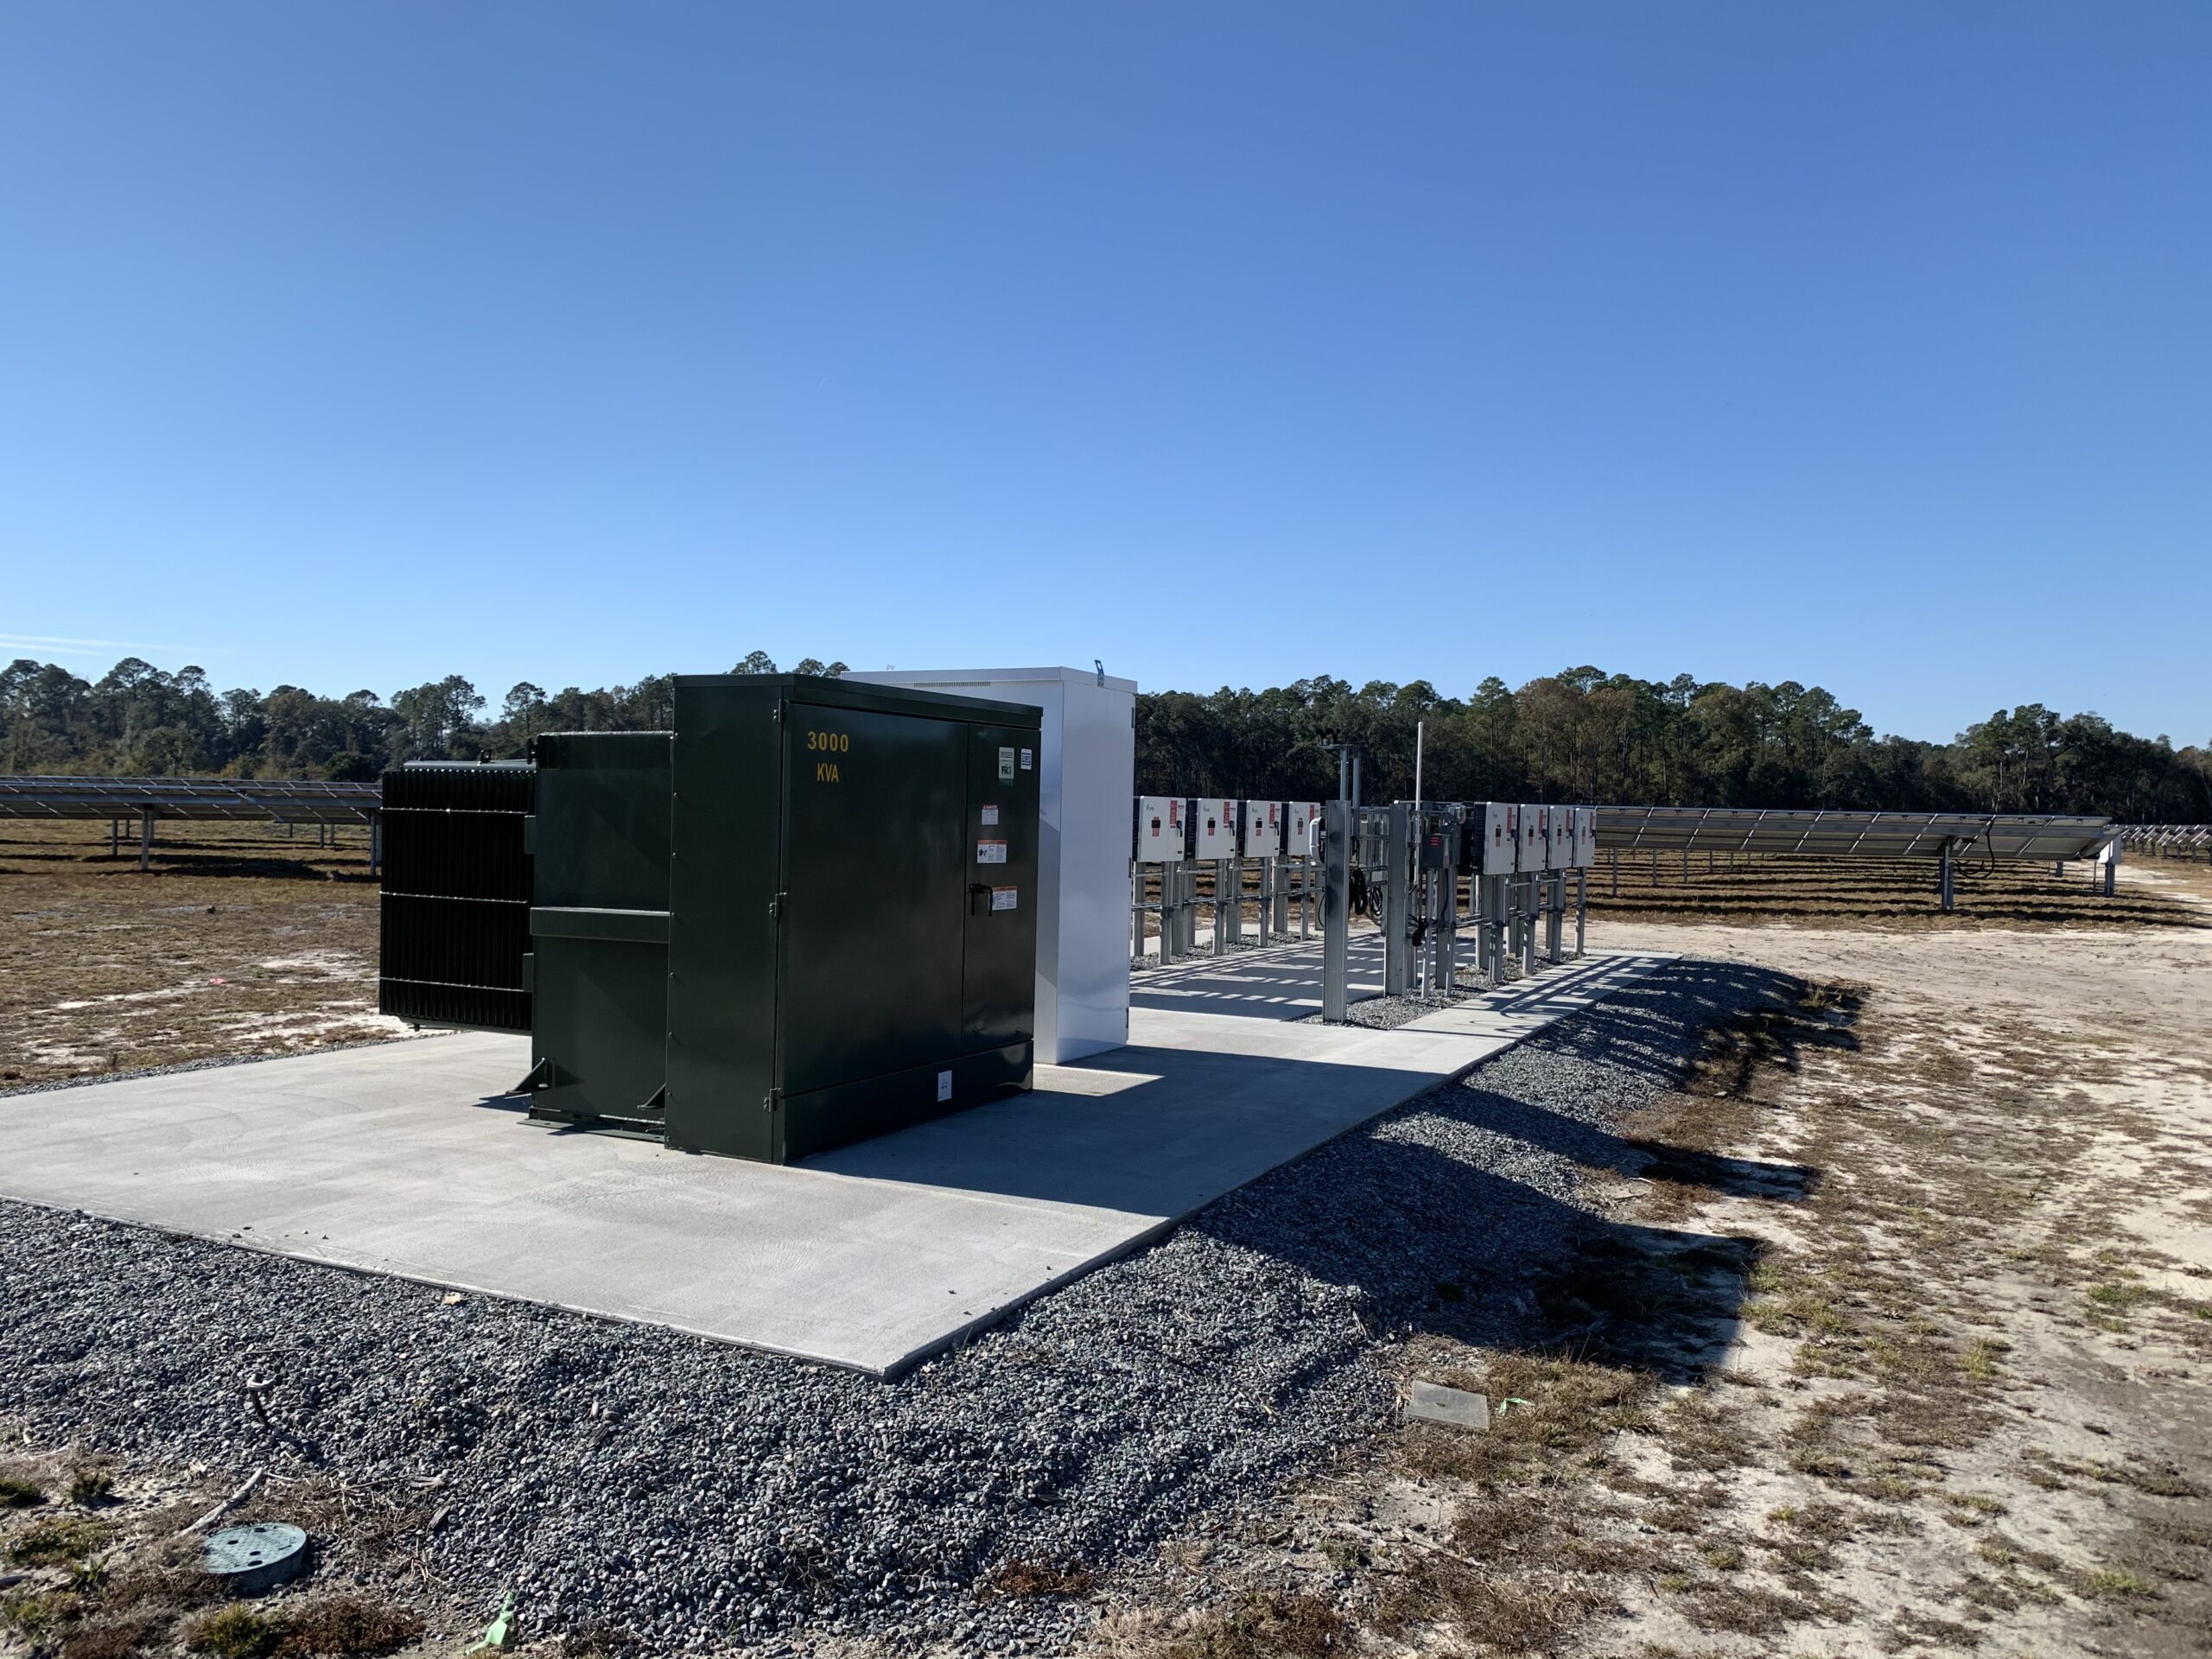 Inman Solar project: Westberry Solar Farm, 3,500 kW solar farm in Jesup, GA